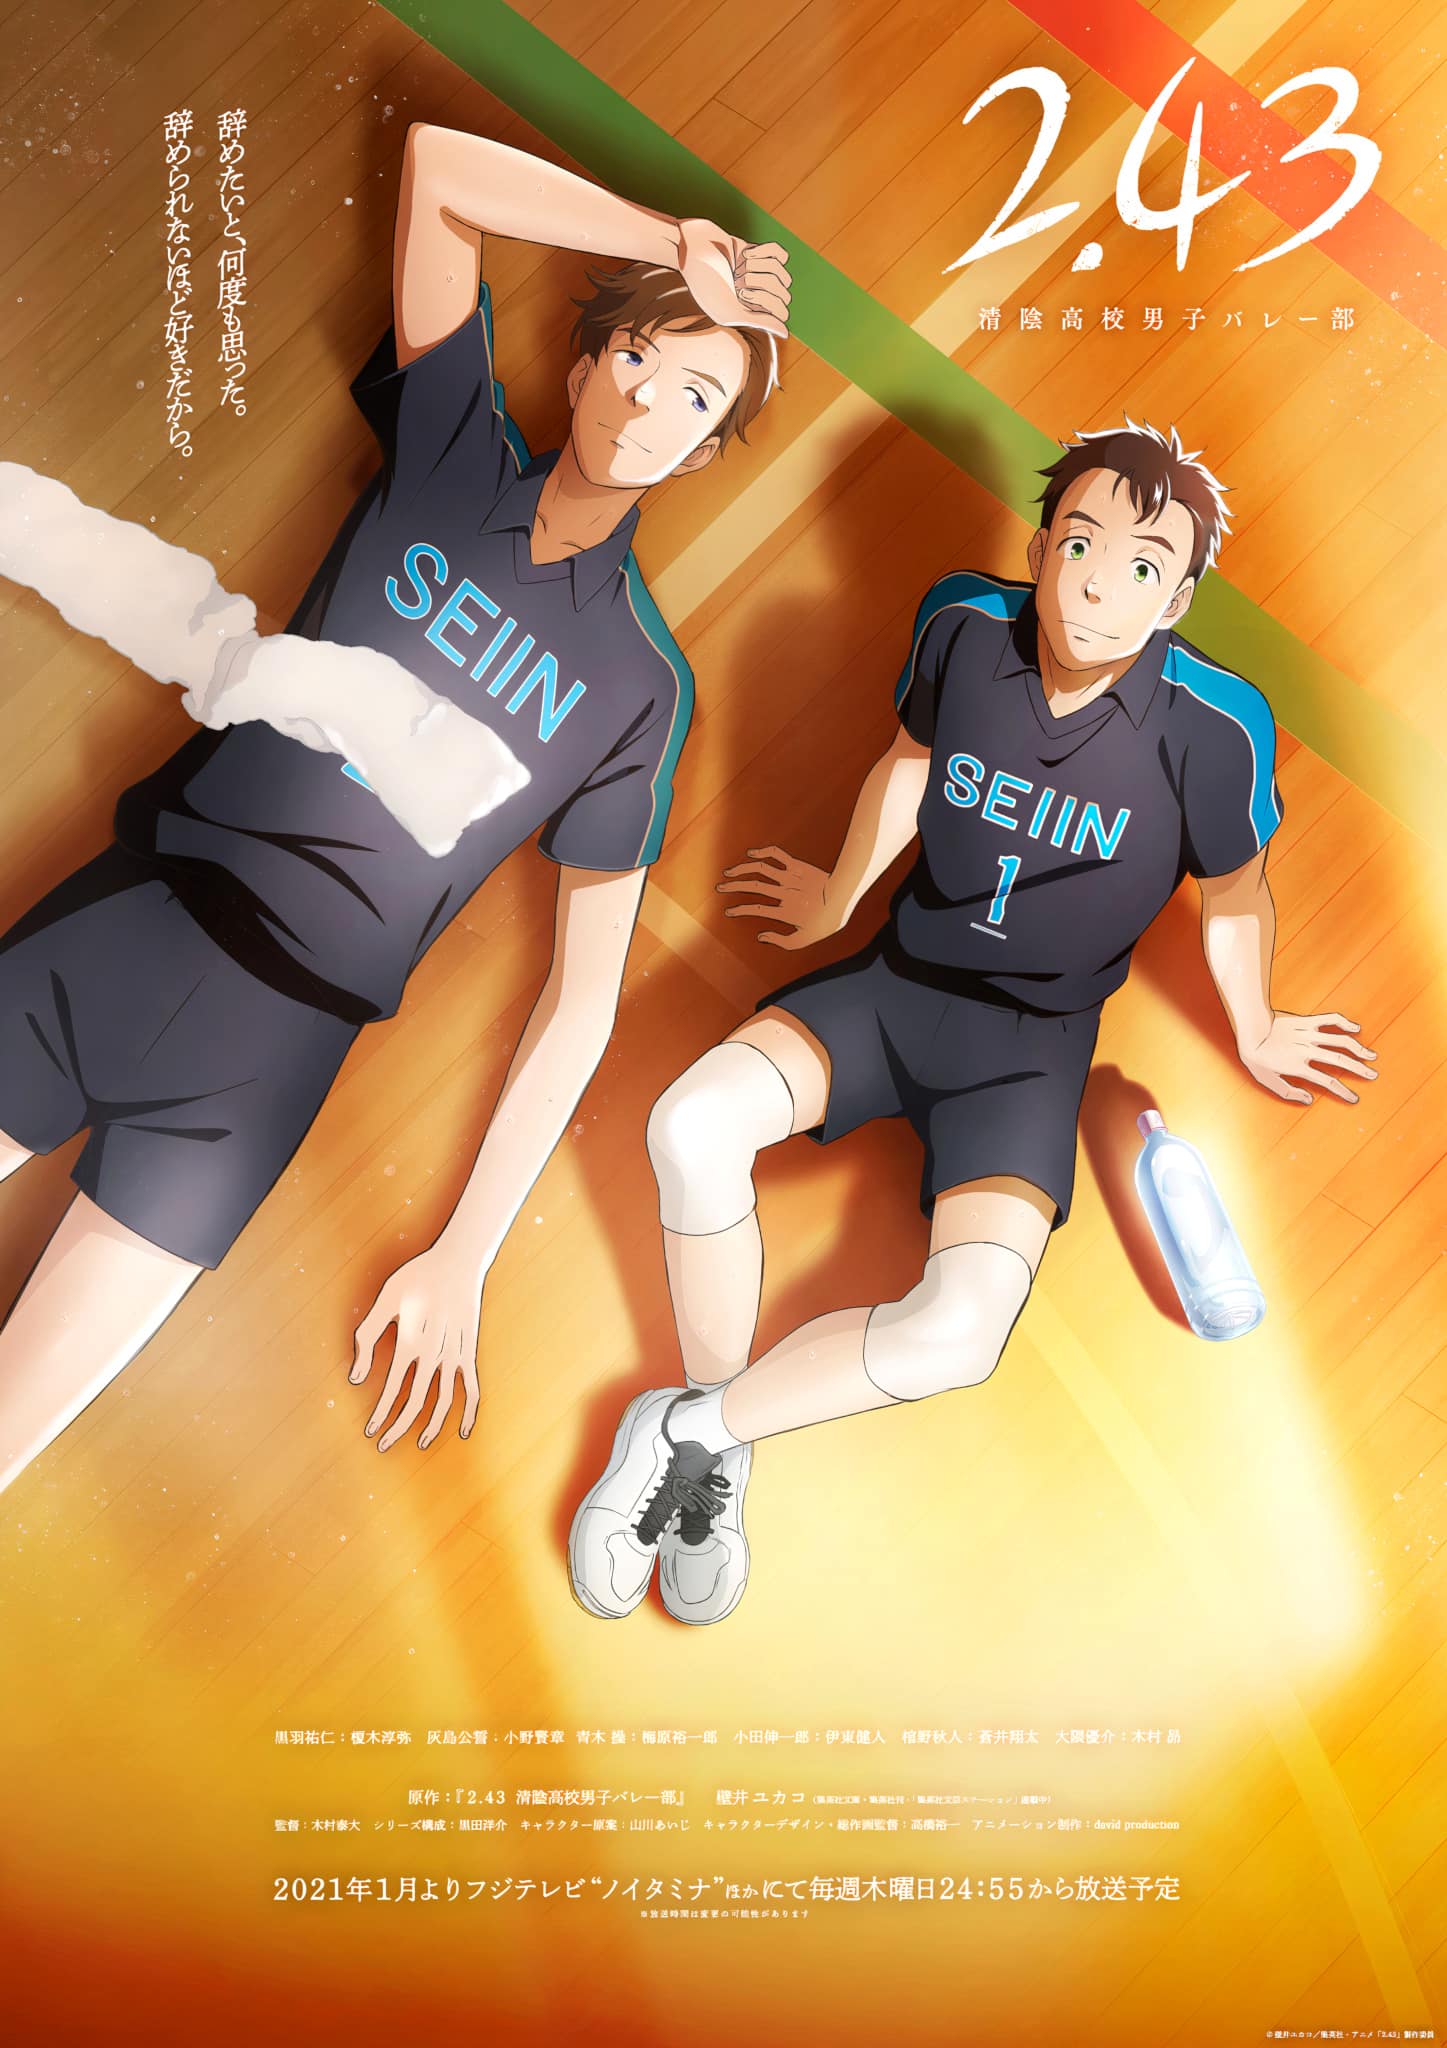 Annonce de l'anime 2.43 Seiin Koukou Danshi Volley-bu à travers un Chara Visuel